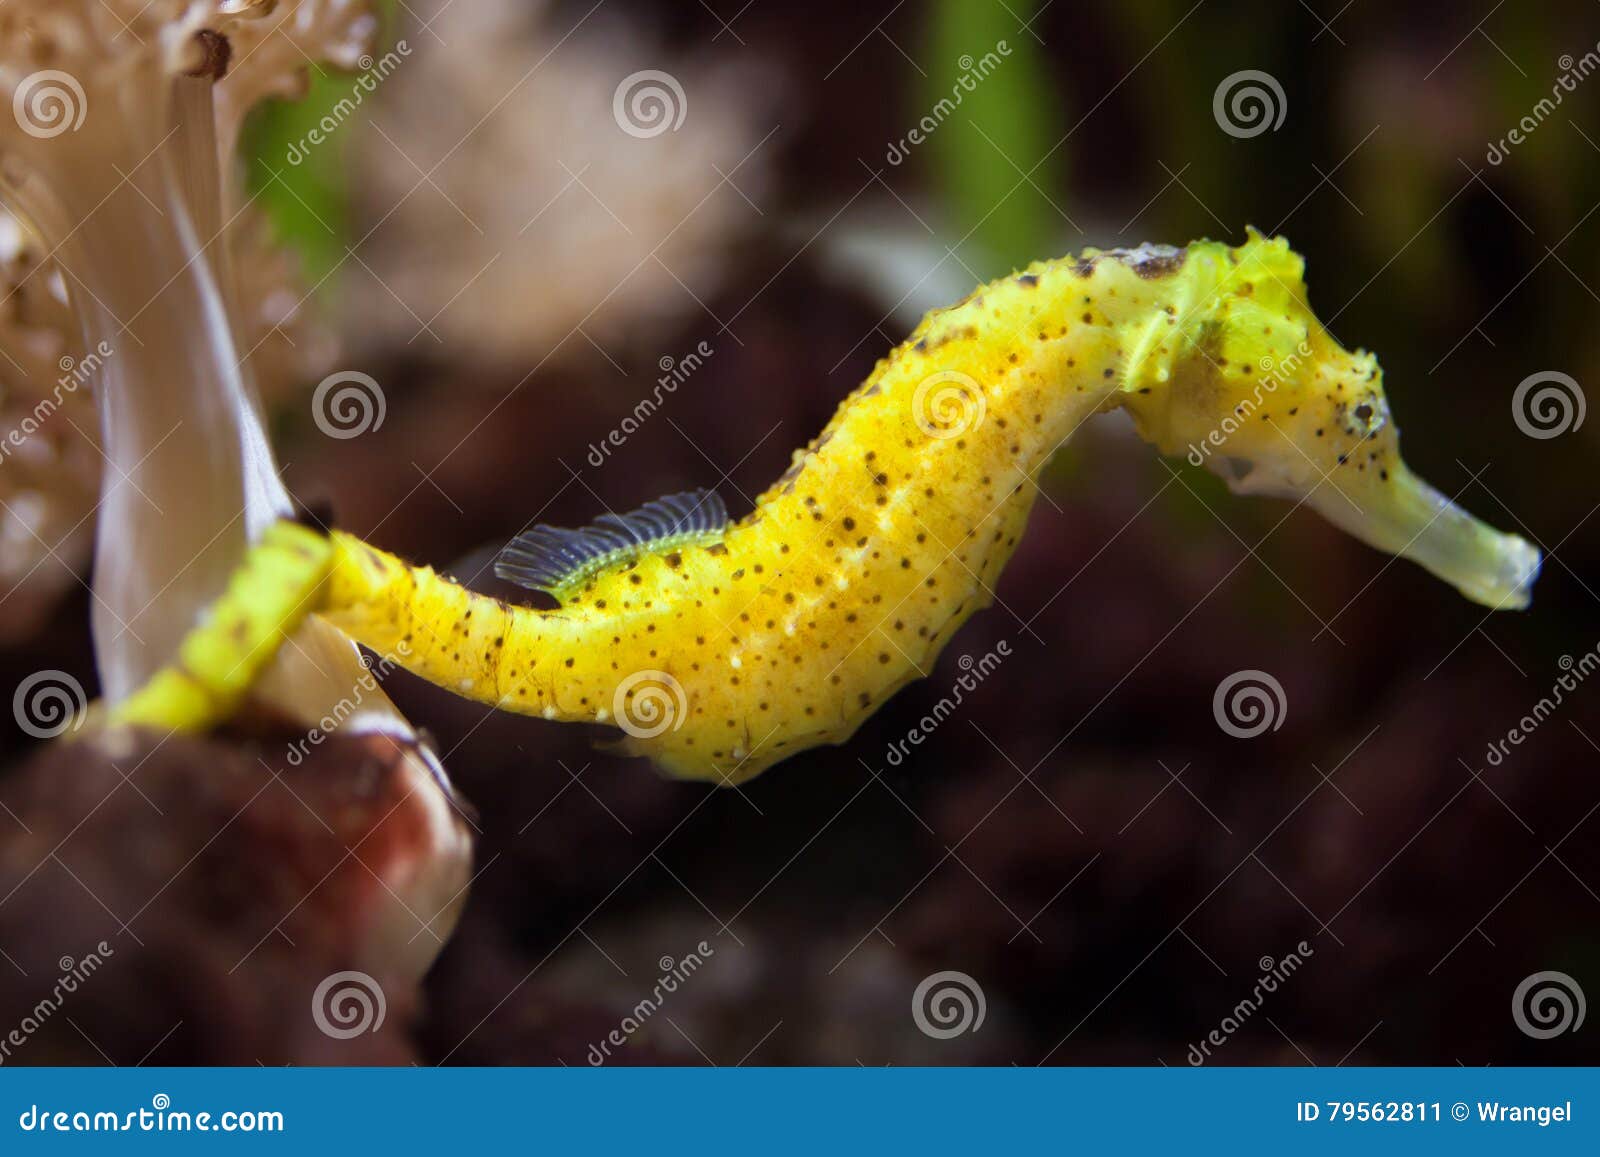 slender seahorse (hippocampus reidi).